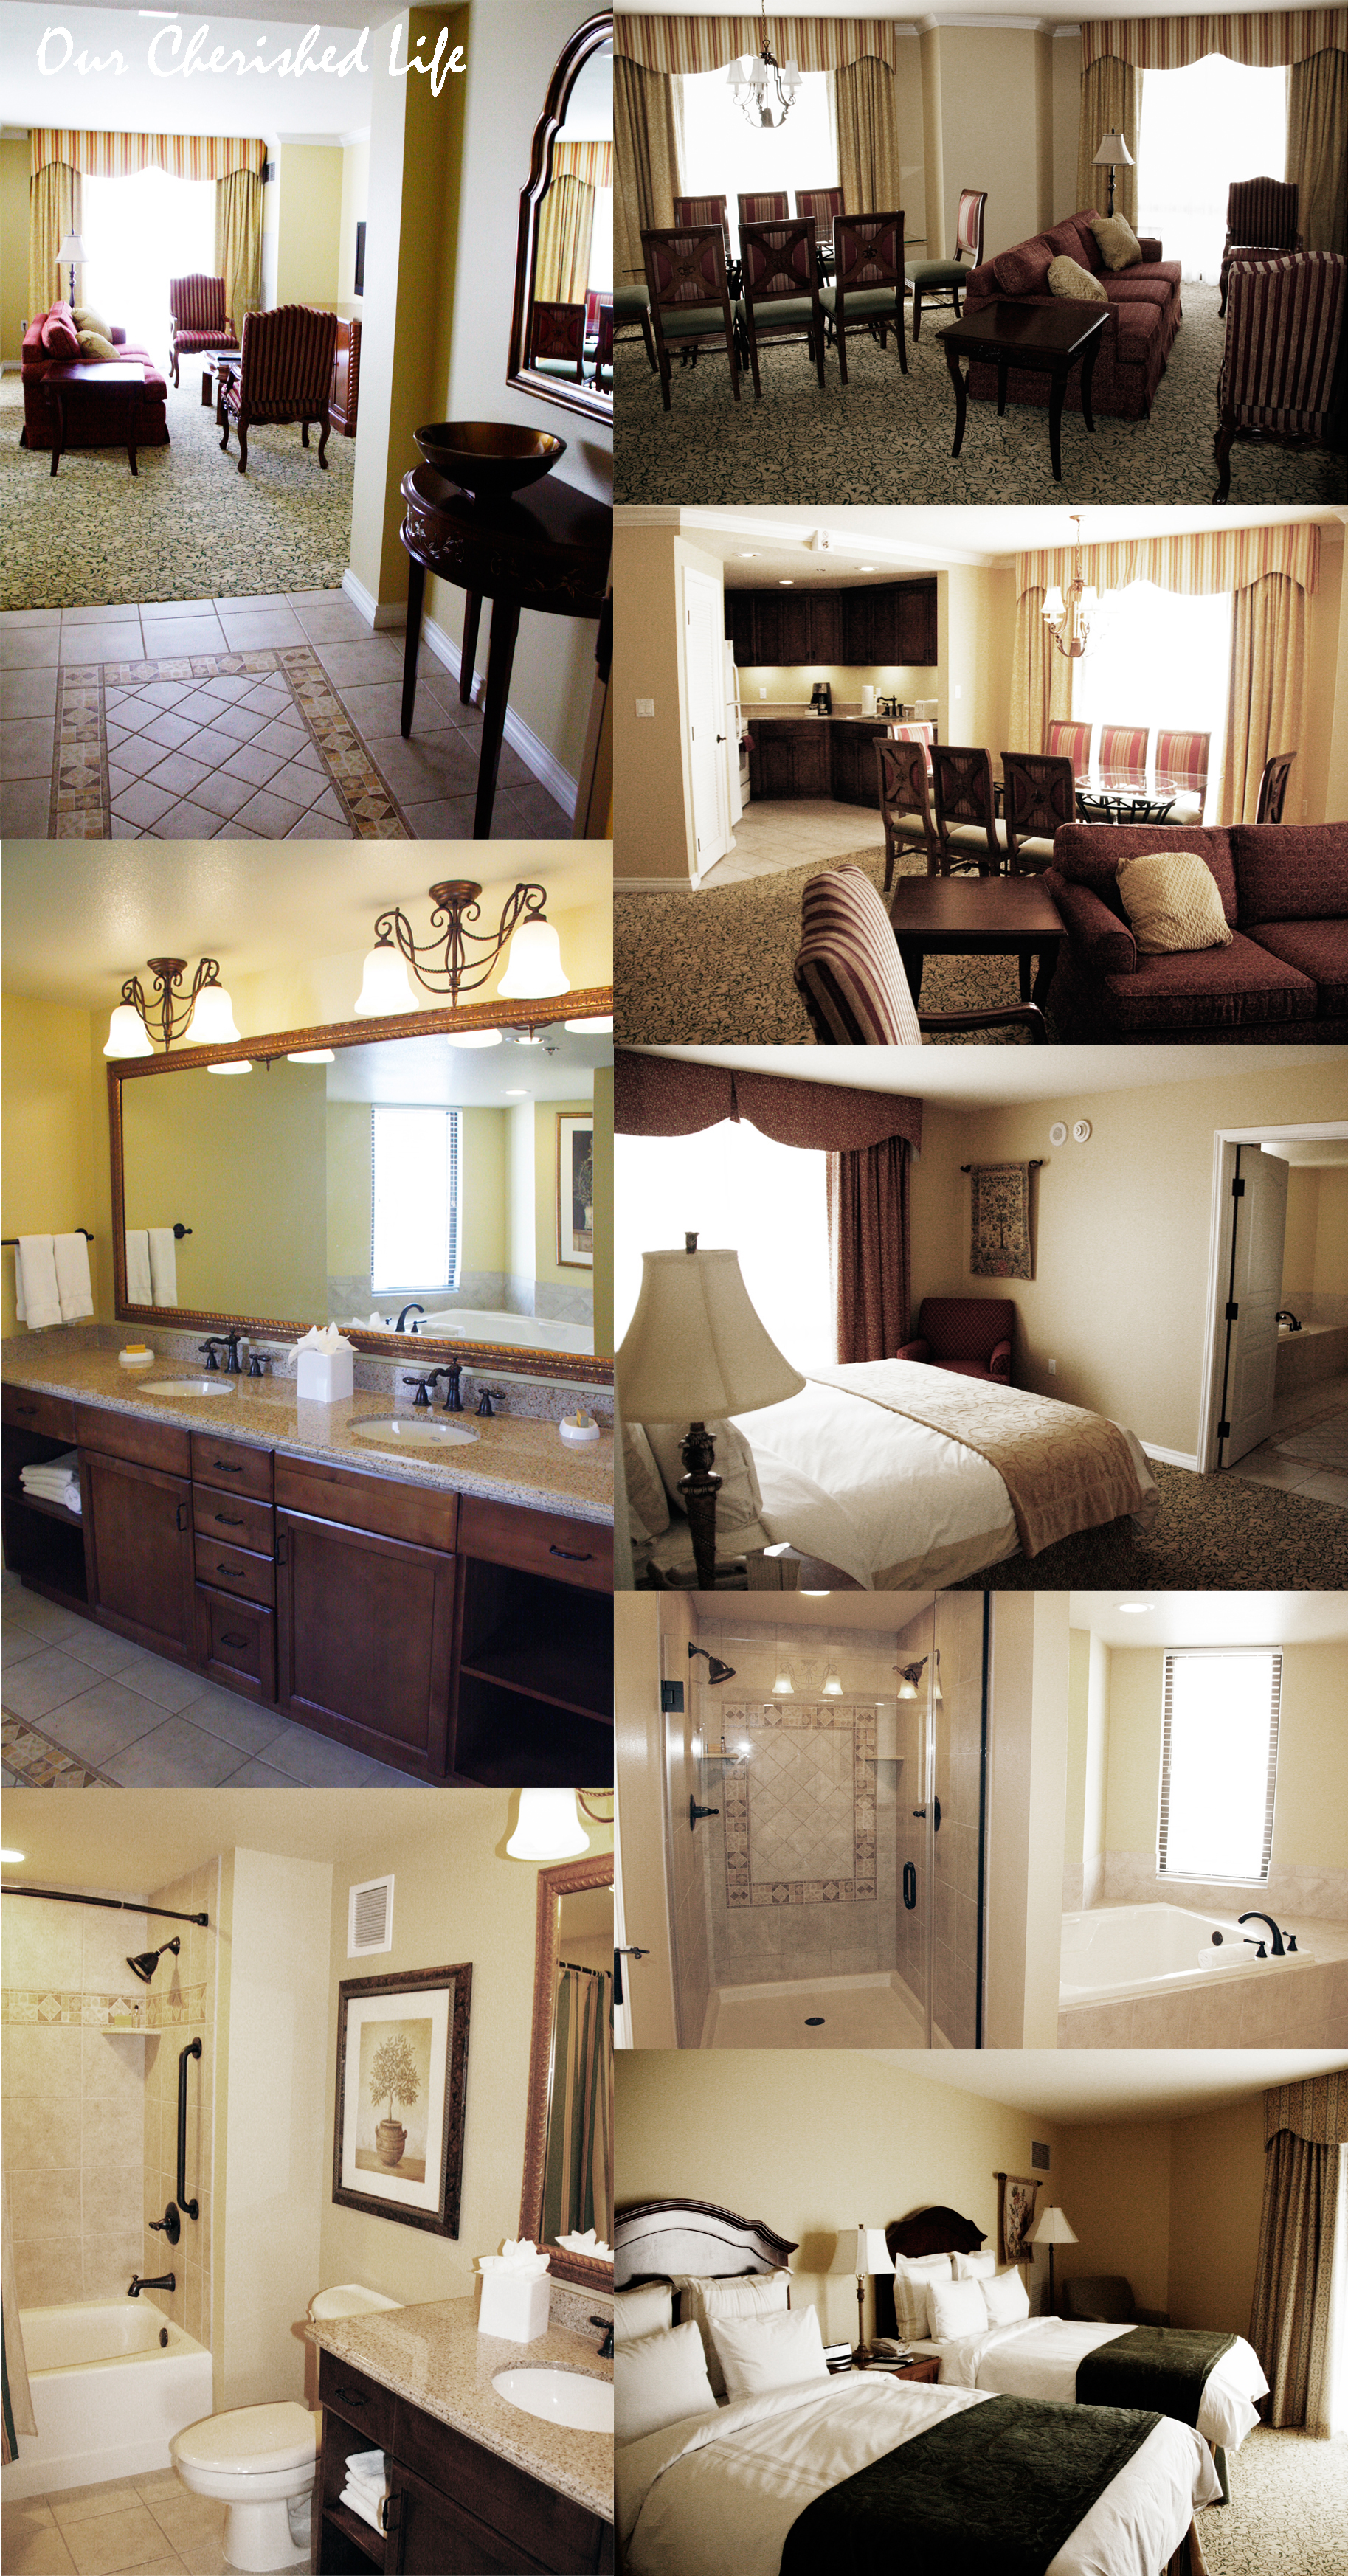 Marriott Grand Chateau Las Vegas 3 bedroom 